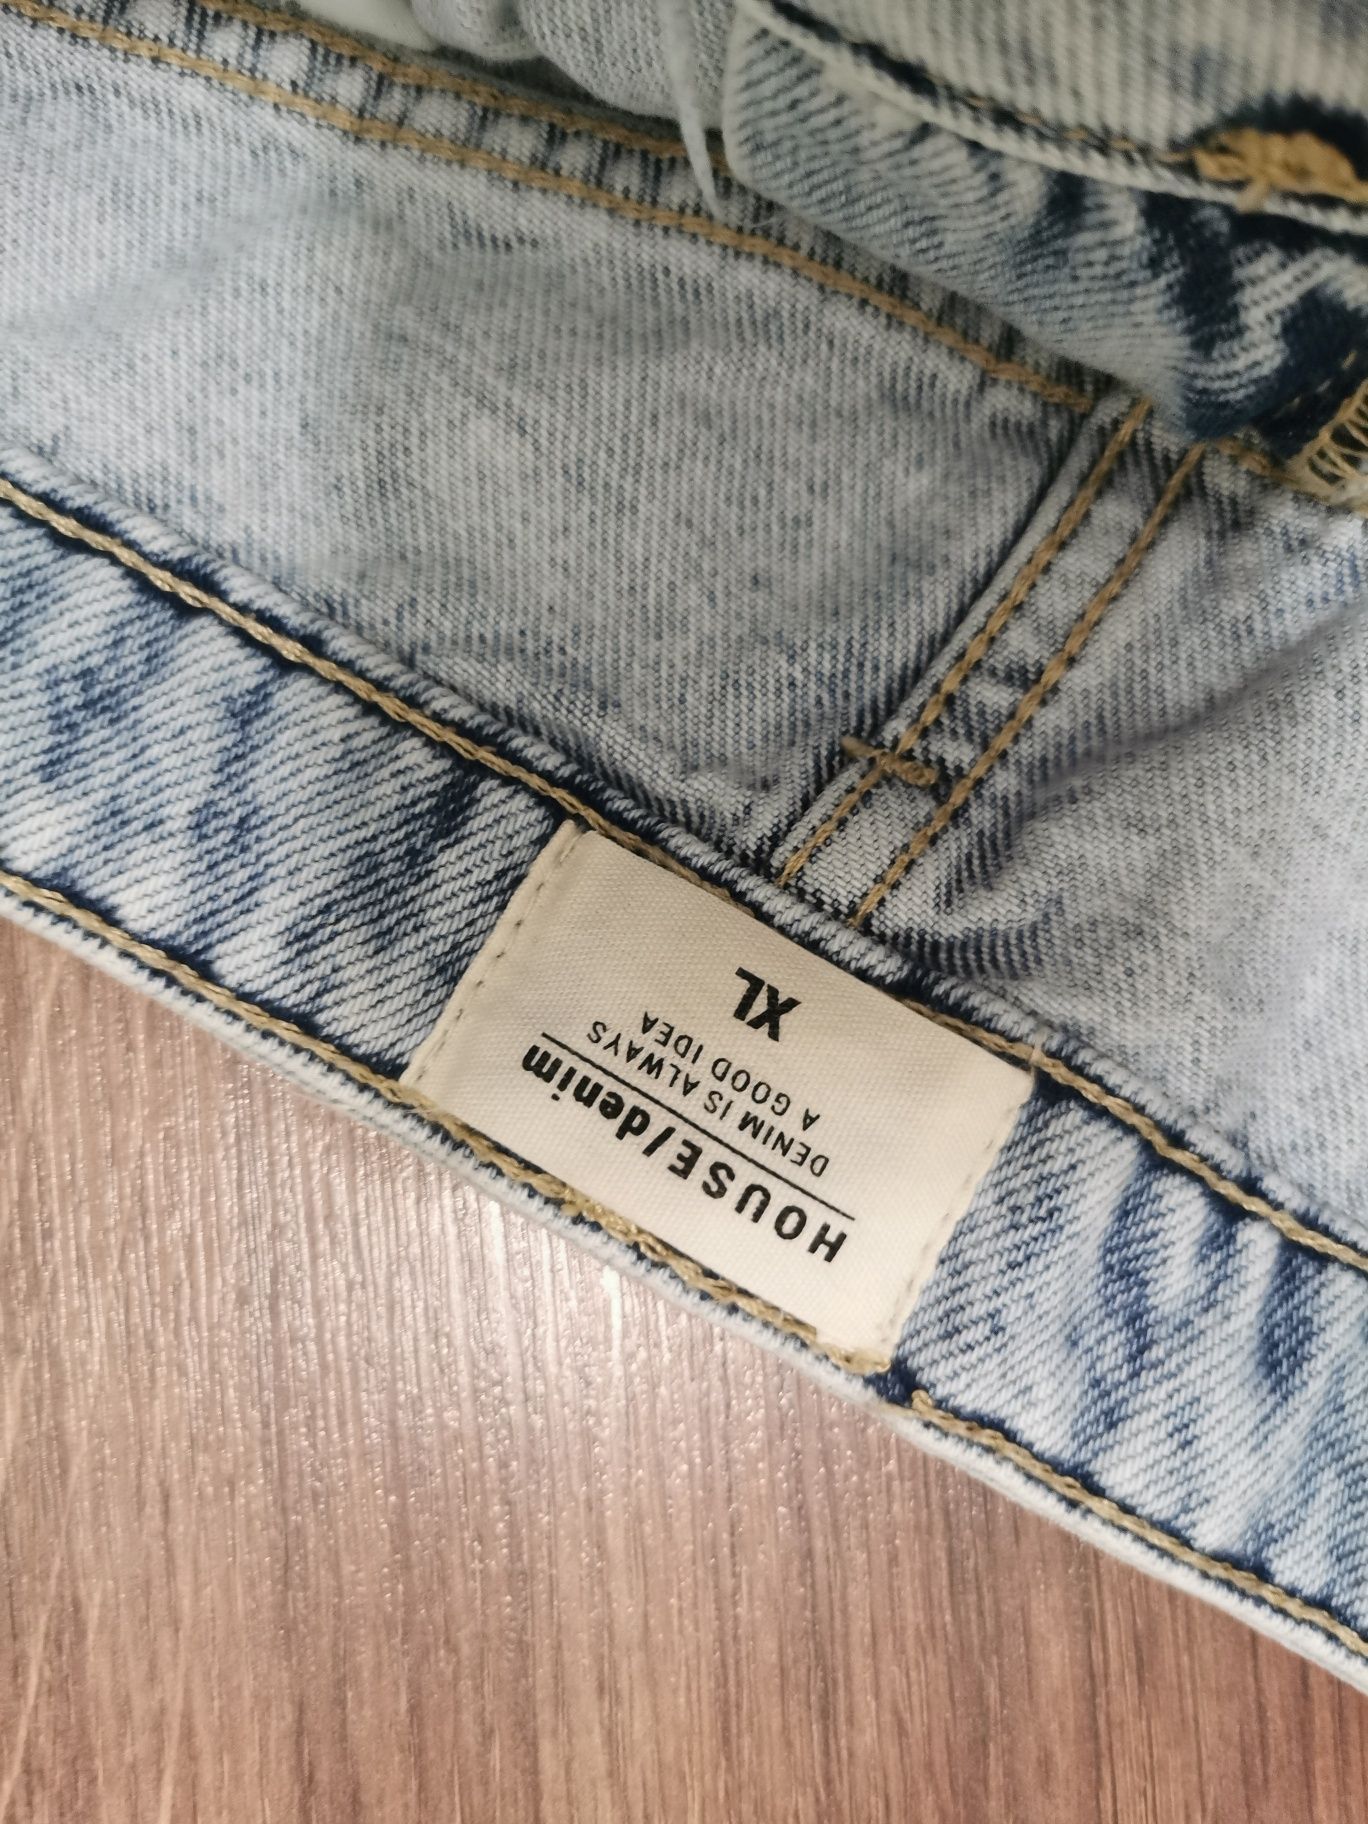 Spódnica dżinsowa spódniczka jeansowa XL 42